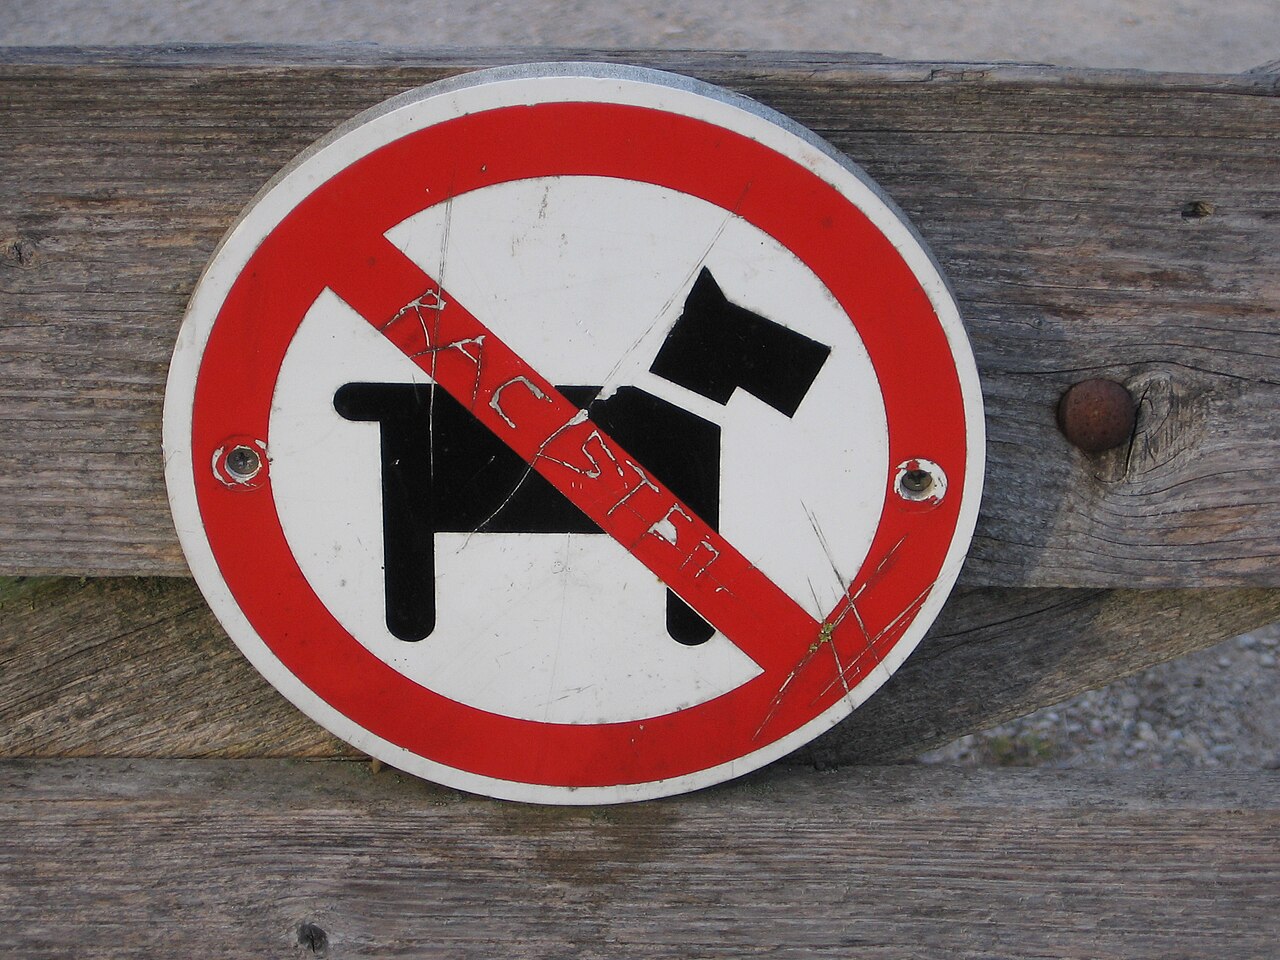 combinatie Met opzet Onhandig File:Verbodsbord voor honden - "Racisten" - No dogs sign - Welsh terrier -  Bert Bospad - Westbroek, The Netherlands, 2020.jpg - Wikimedia Commons